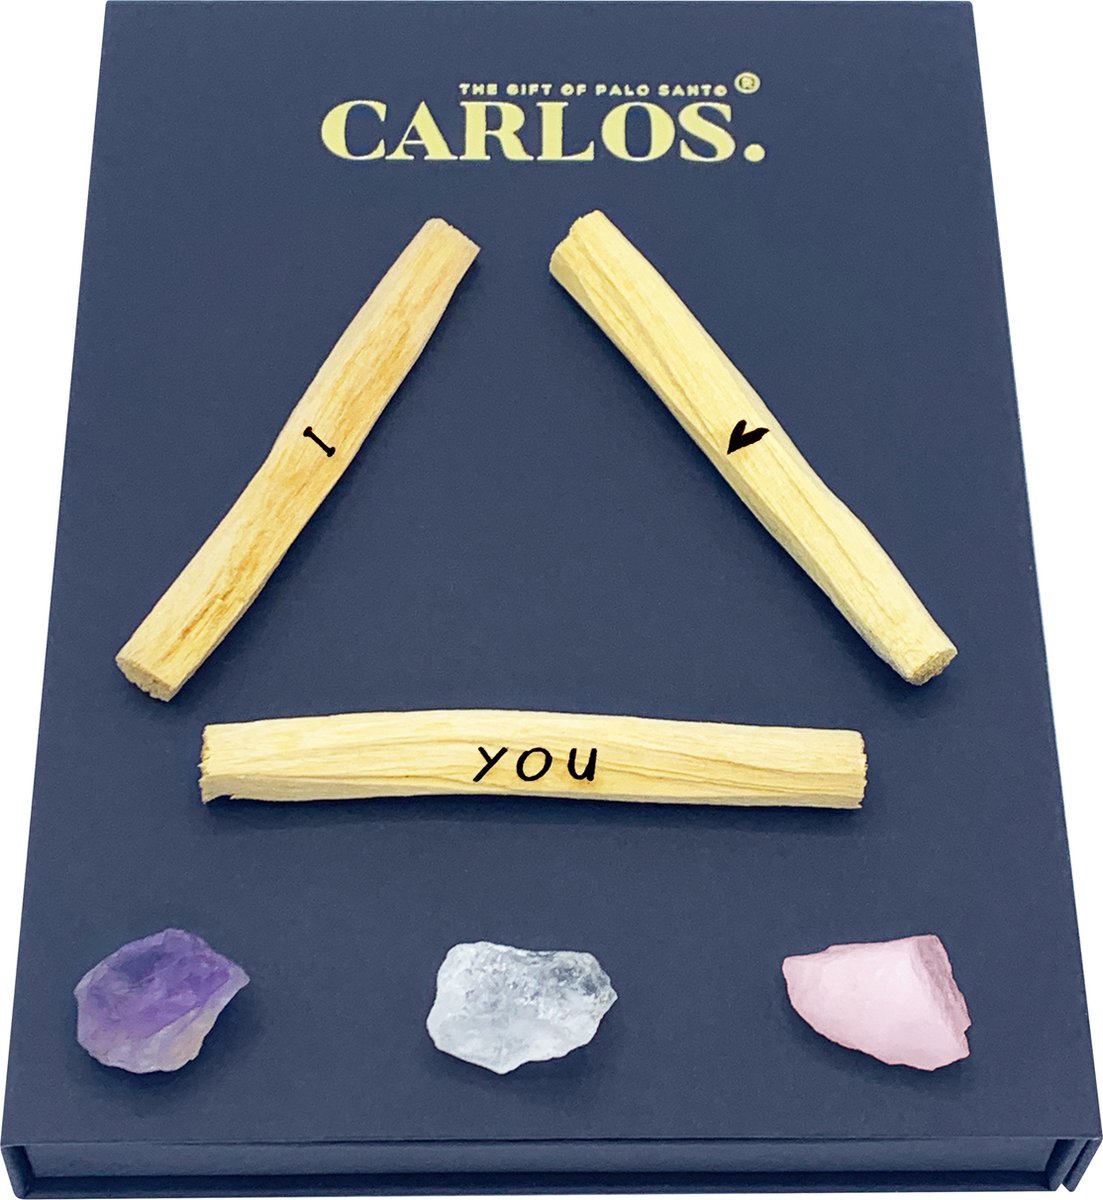 Luxe giftset PALO SANTO met gegraveerde boodschap I LOVE YOU + 3 edelstenen: amethist, bergkristal, rozenkwarts.